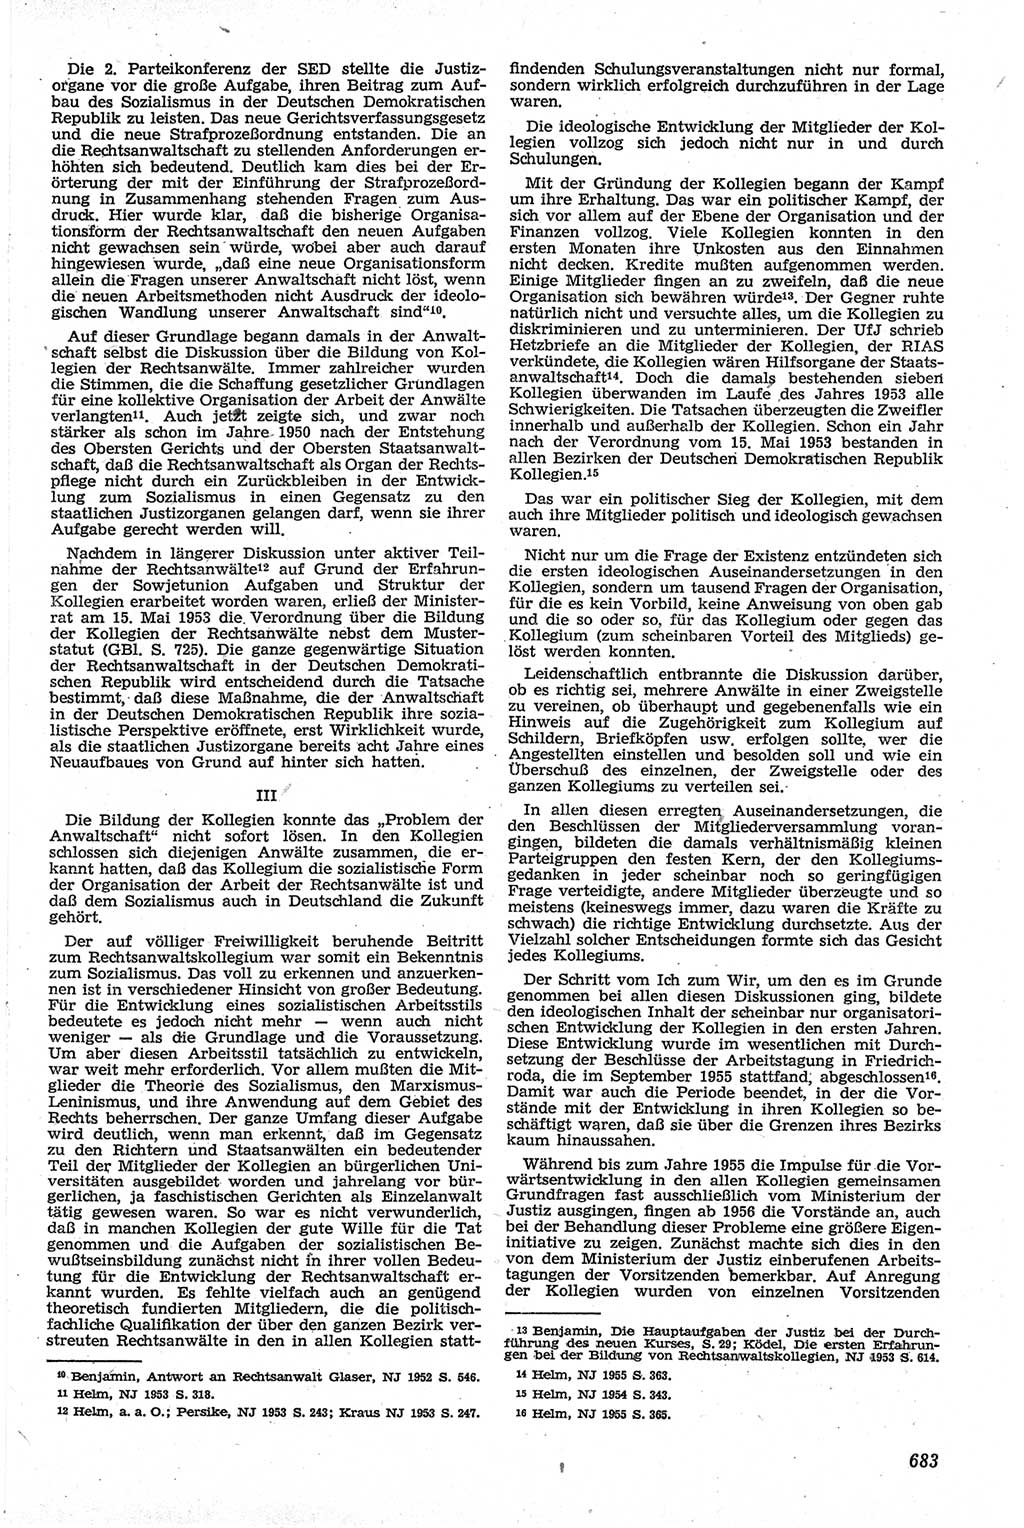 Neue Justiz (NJ), Zeitschrift für Recht und Rechtswissenschaft [Deutsche Demokratische Republik (DDR)], 13. Jahrgang 1959, Seite 683 (NJ DDR 1959, S. 683)